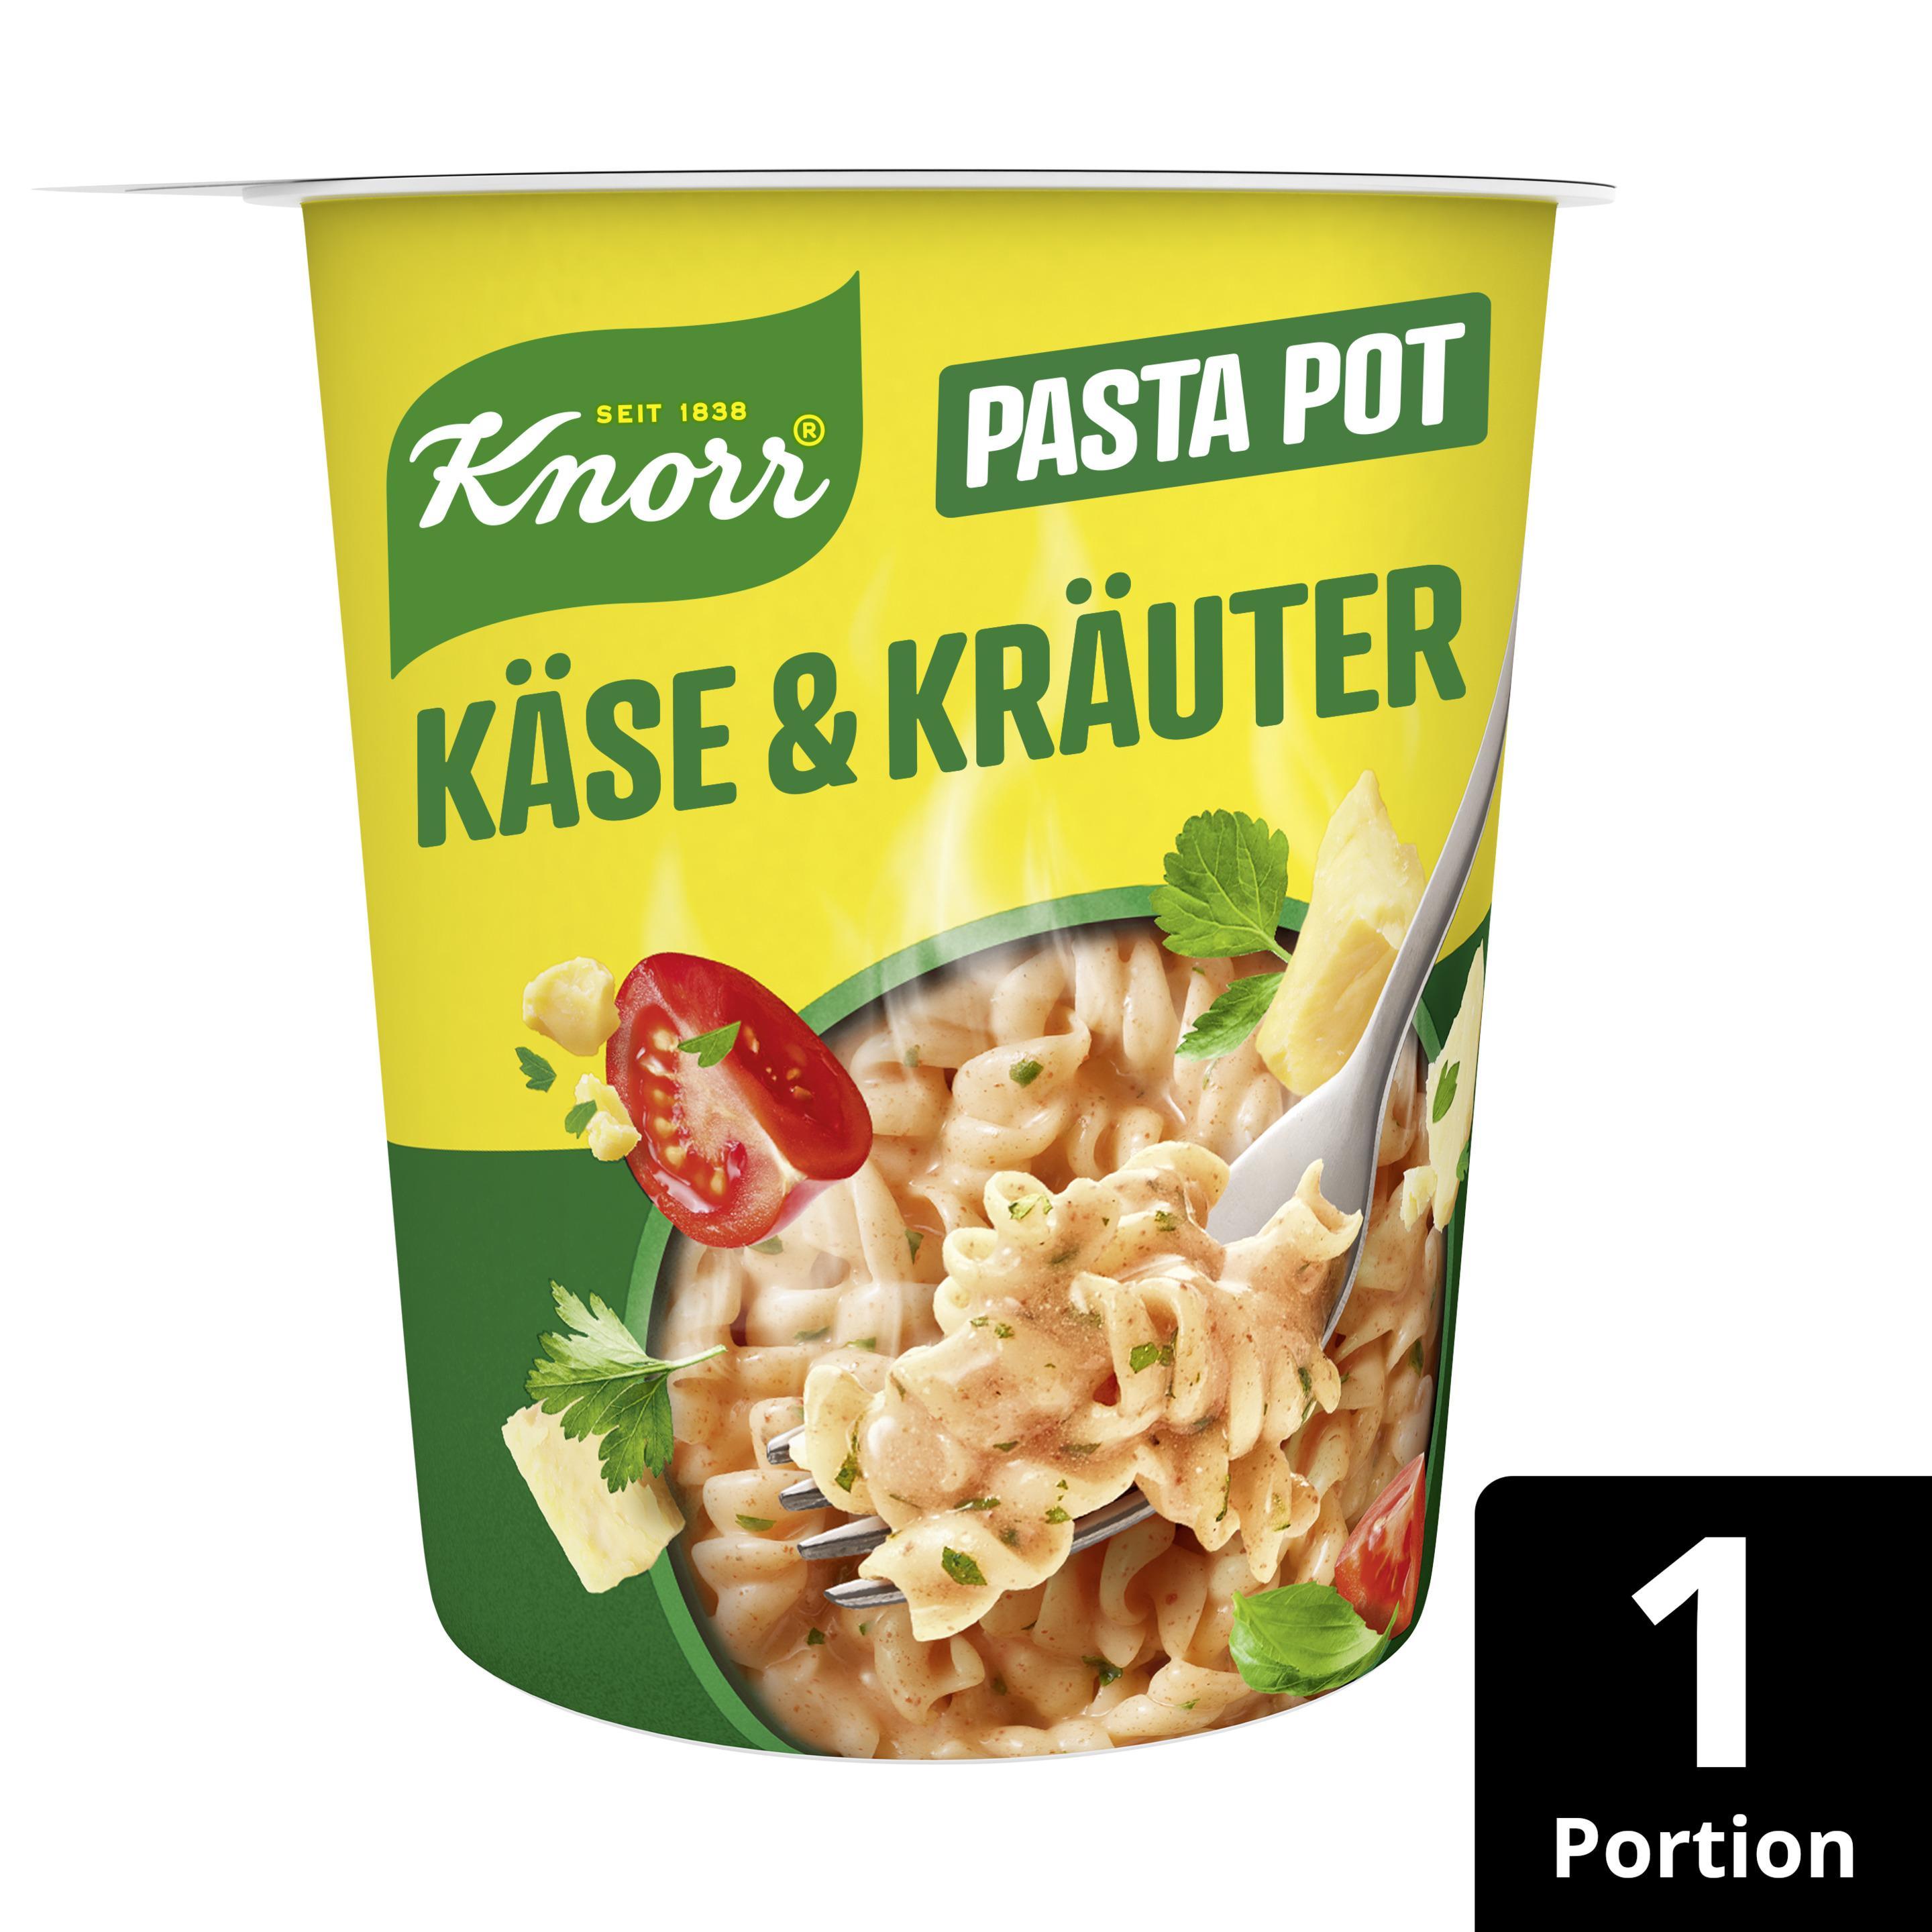 Knorr Pasta Snack Pot Käse & Kräuter 1 Portion